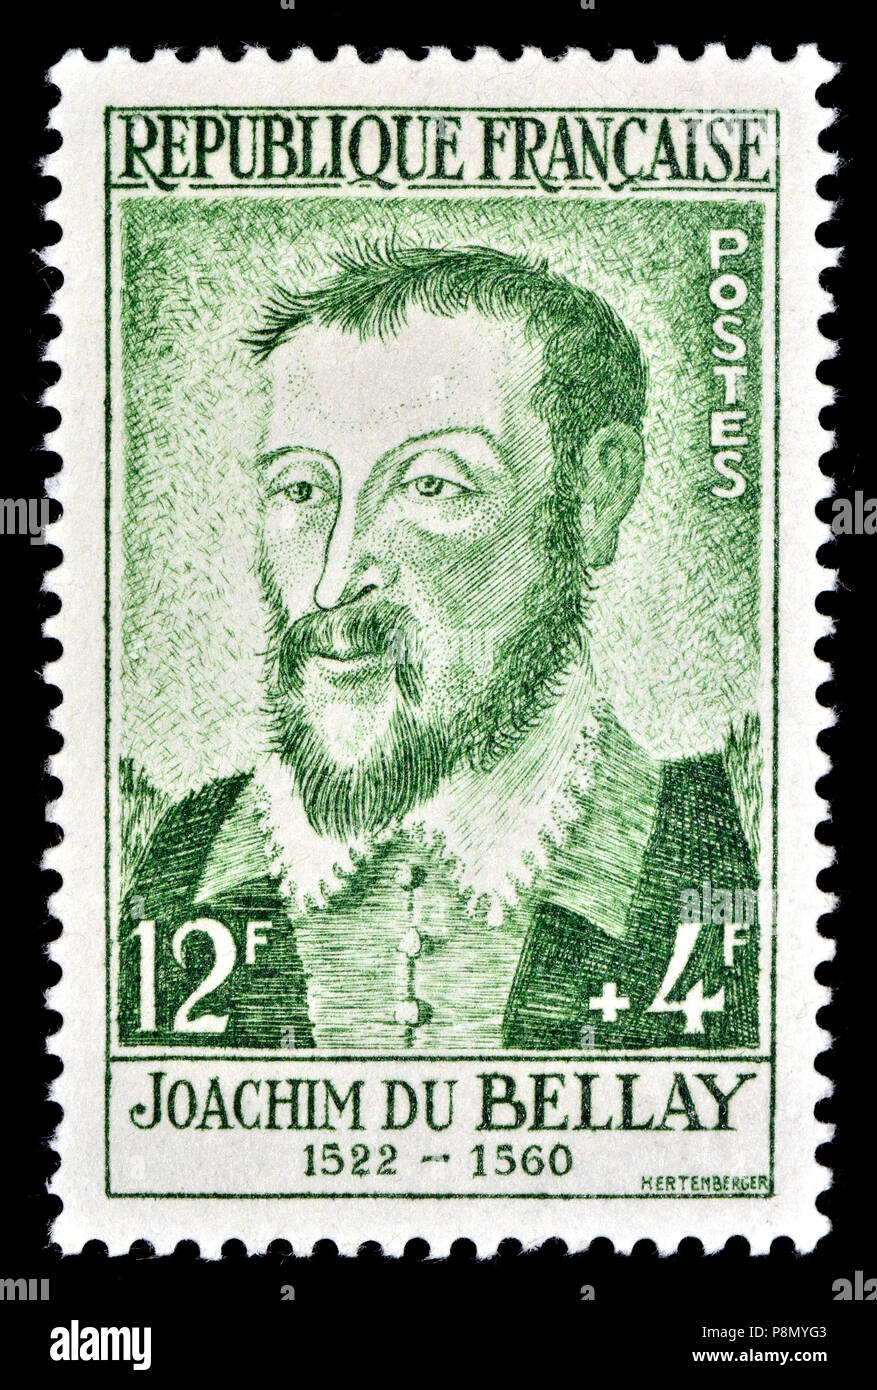 Il francese francobollo (1958) : Joachin de Bellay (1522-1560) poeta francese, critico e un membro della Pléiade (gruppo del XVI secolo Renaissanc francese Foto Stock